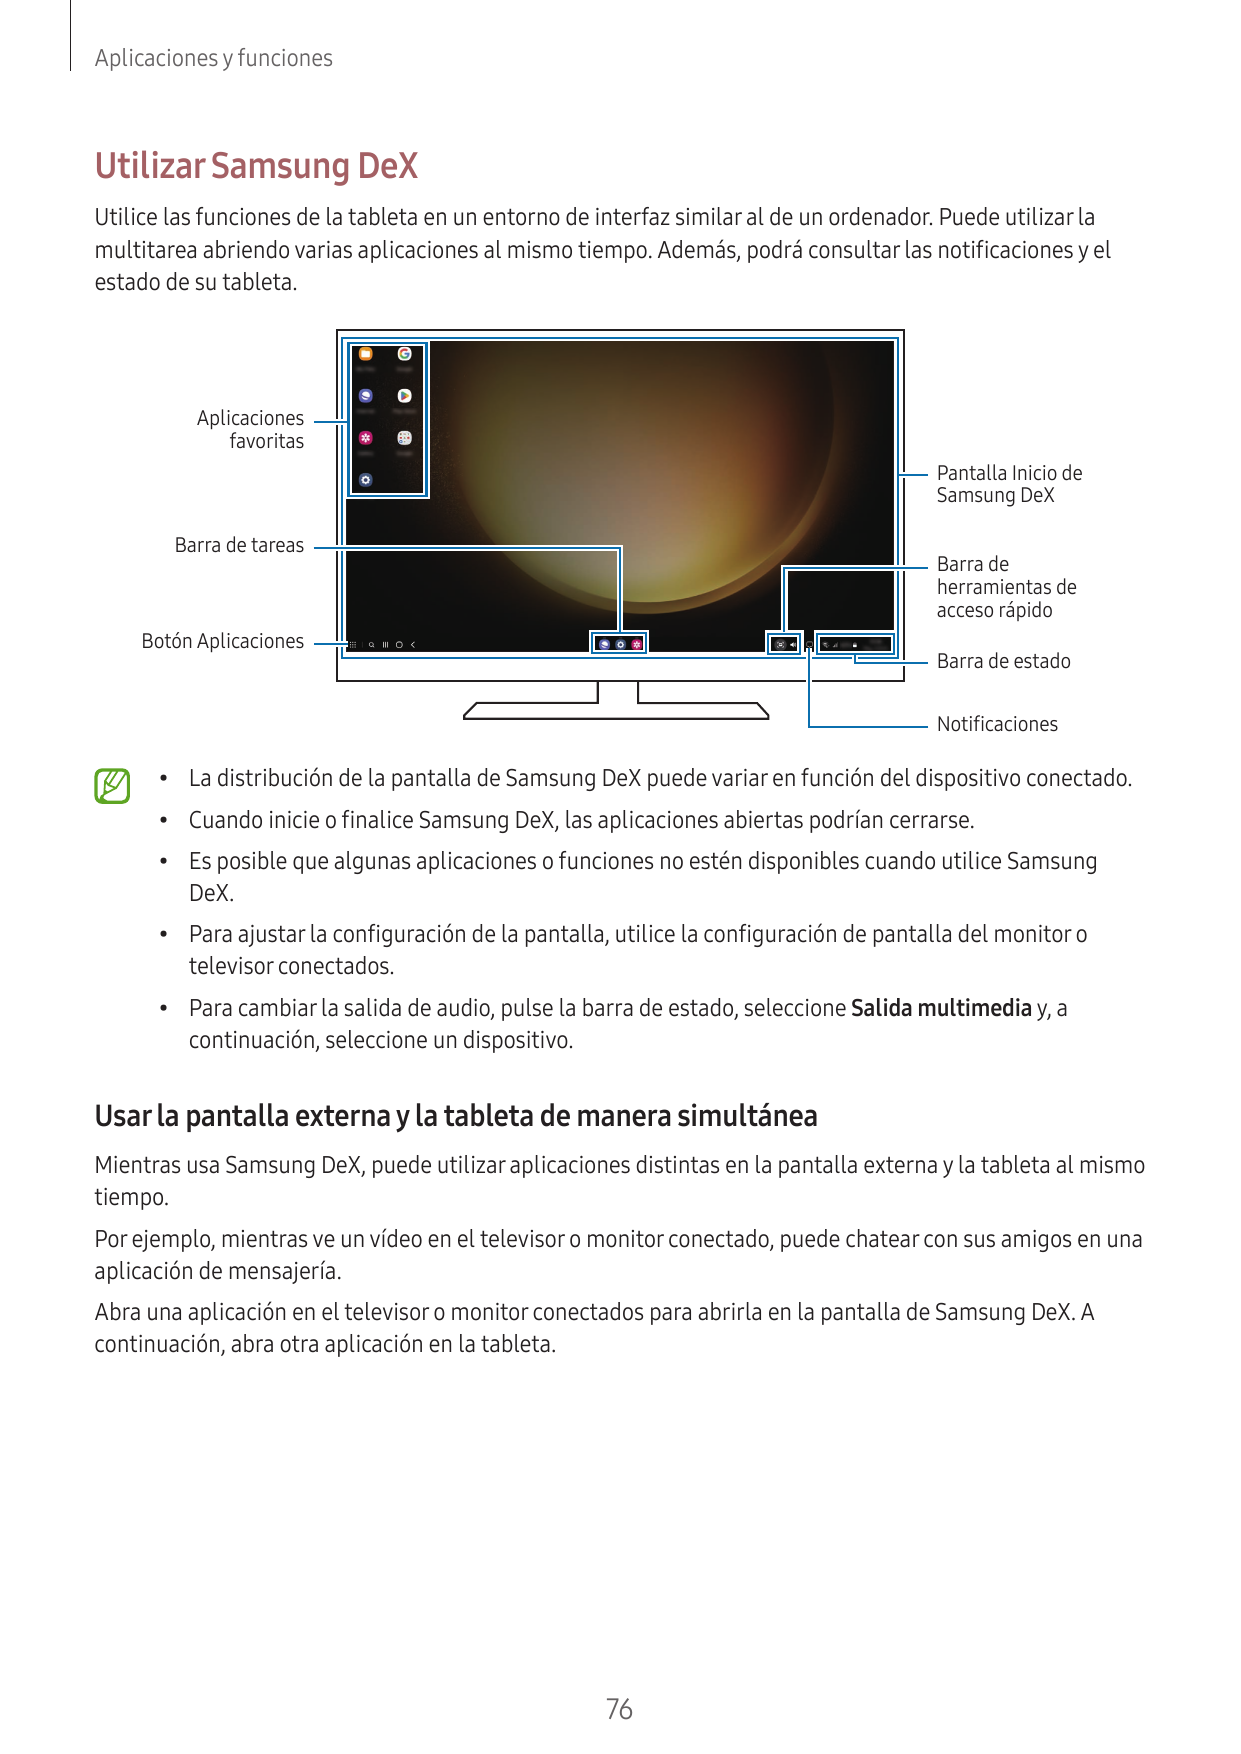 Aplicaciones y funcionesUtilizar Samsung DeXUtilice las funciones de la tableta en un entorno de interfaz similar al de un orden